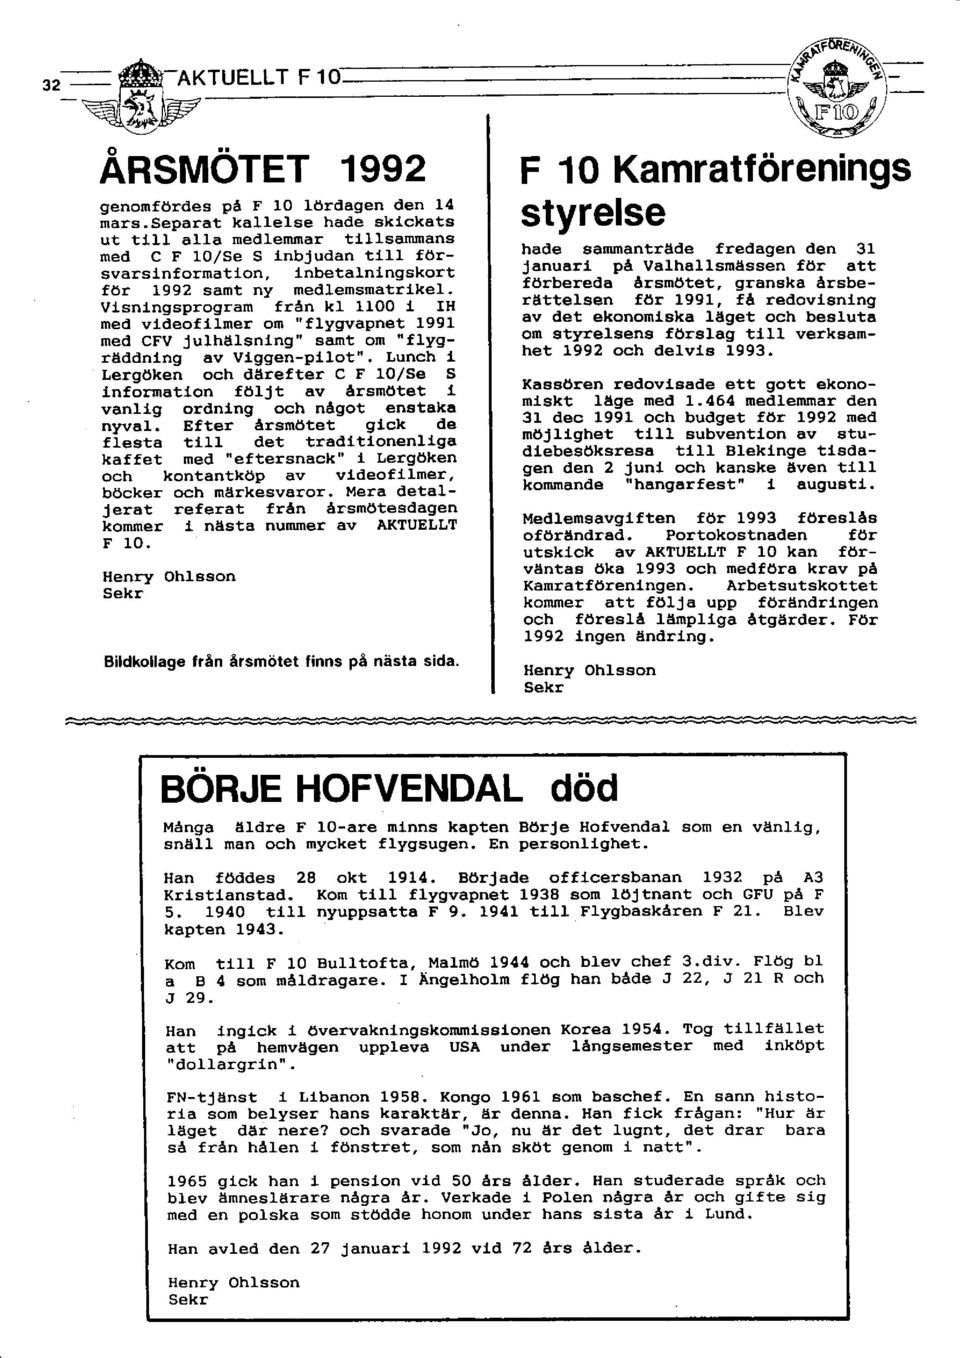 vlsntngsprogram från kl 1100 1 IH med vldeofllmer on " flygrvapnet 1991 med cfv Julhålsning" samt on "flygräddnlng av vlggen-p11ot".